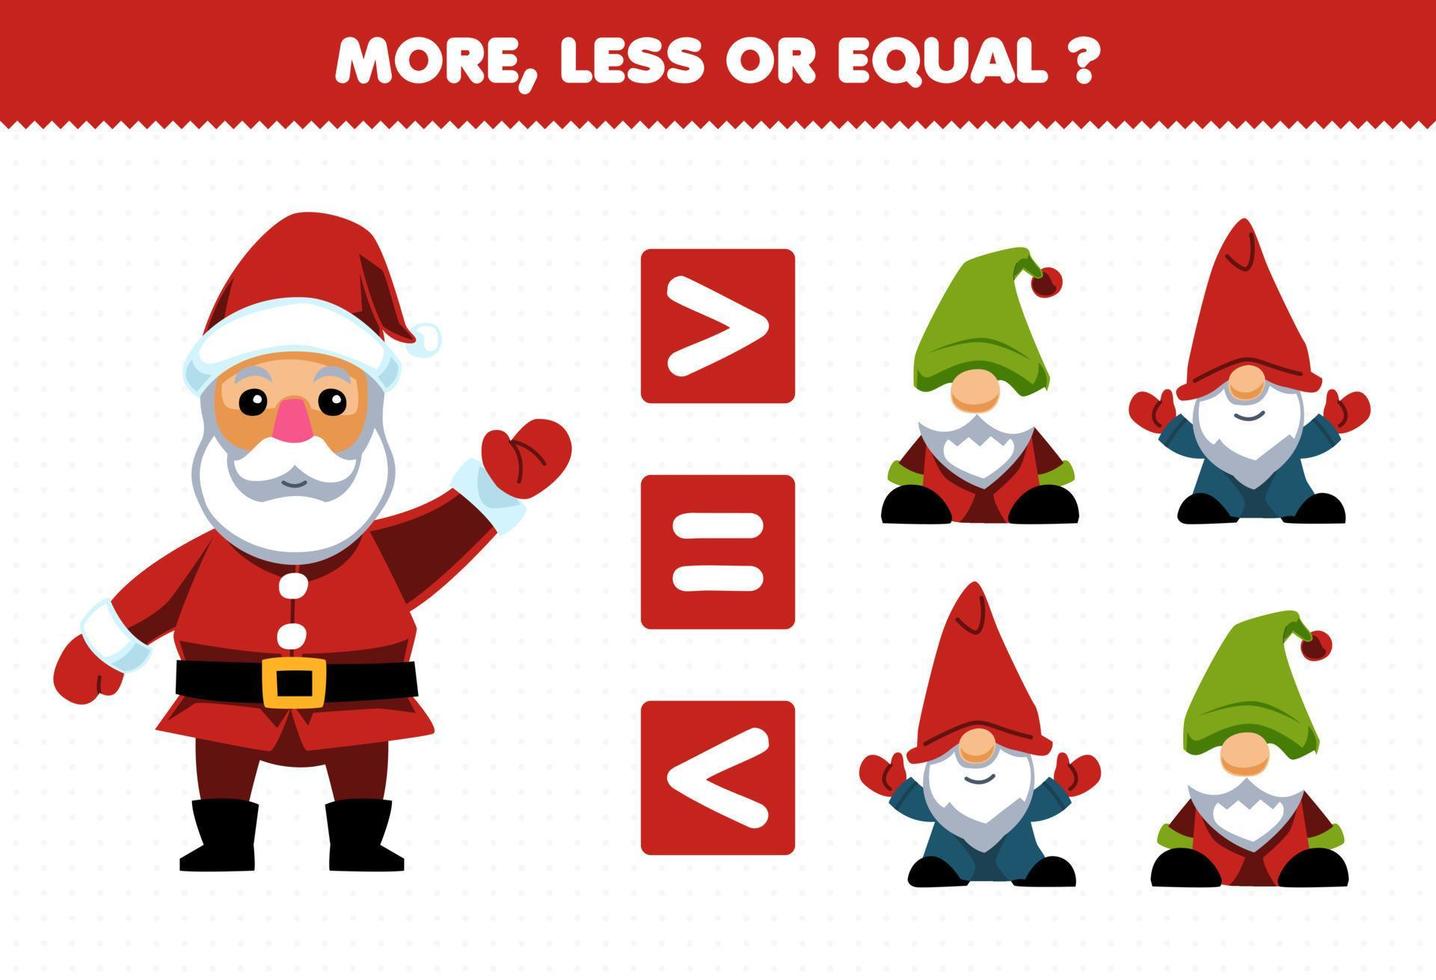 bildungsspiel für kinder mehr weniger oder gleich zählen sie die menge an niedlichem cartoon-weihnachtsmann und gnome druckbares winterarbeitsblatt vektor